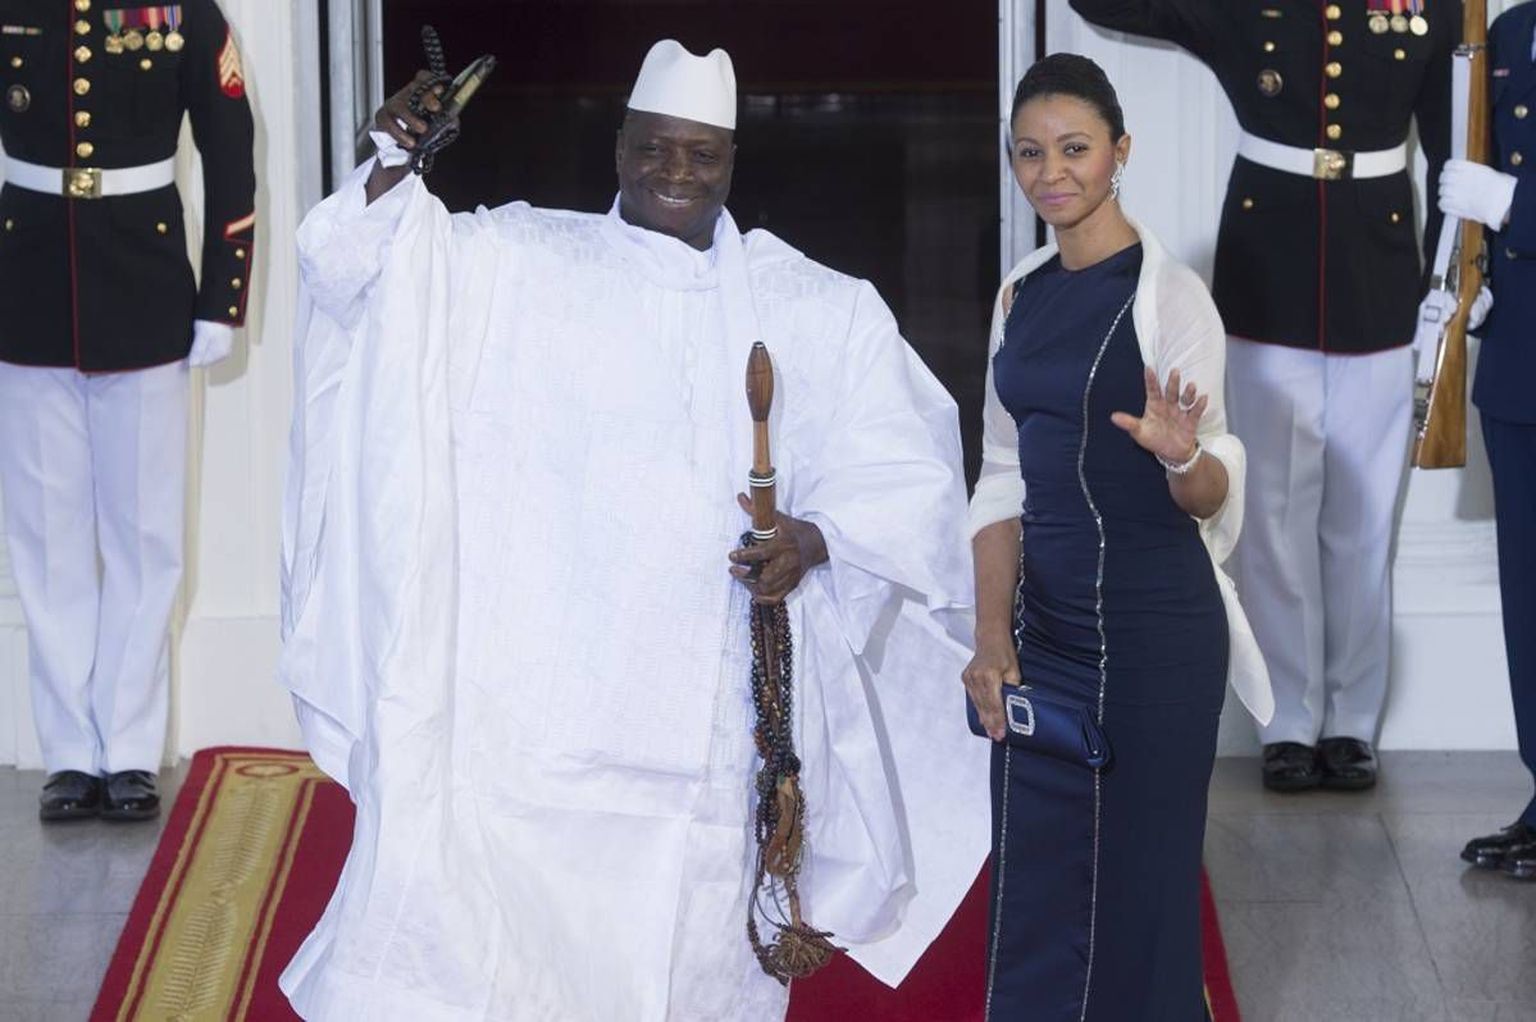 Gambia president Yahya Jammeh ja tema abikaasa Zeinab Suma Jammeh visiidil Ühendriikidesse.